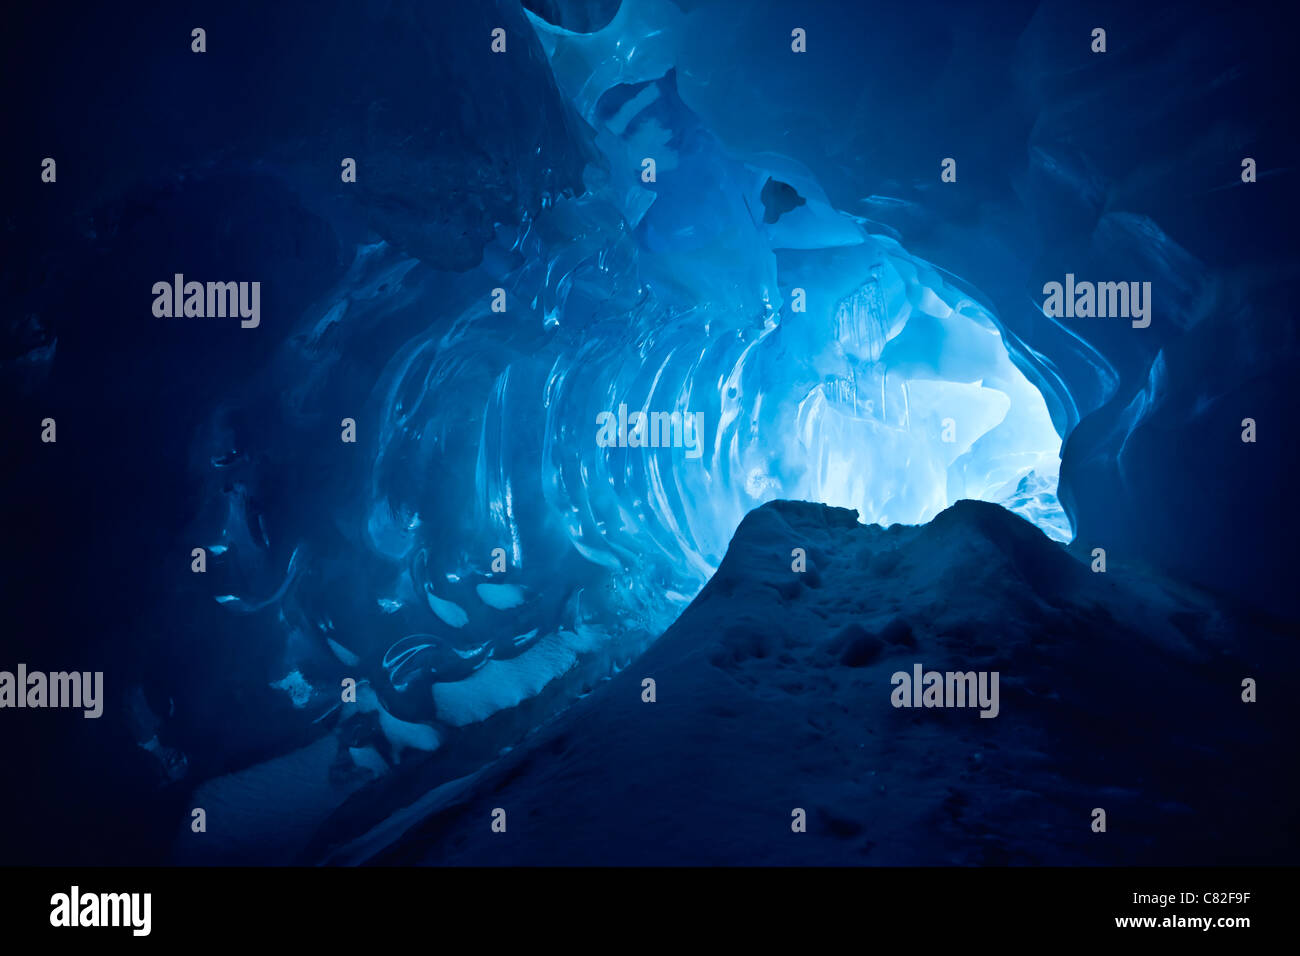 Blu grotta del ghiaccio coperto di neve e inondato di luce Foto Stock